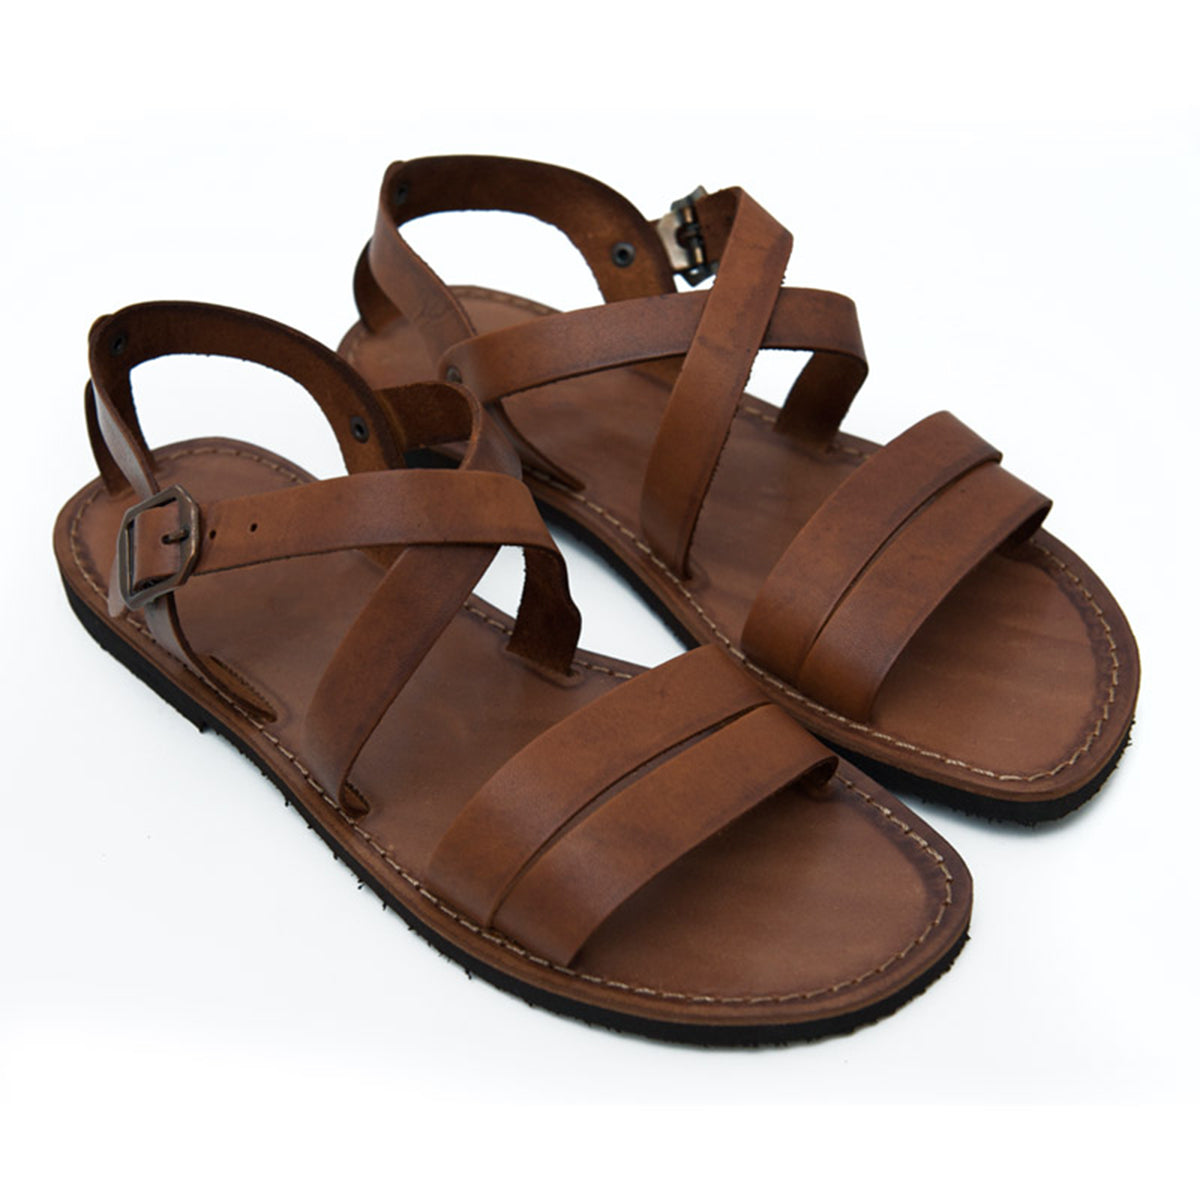 Tan Leather Strap Sandal